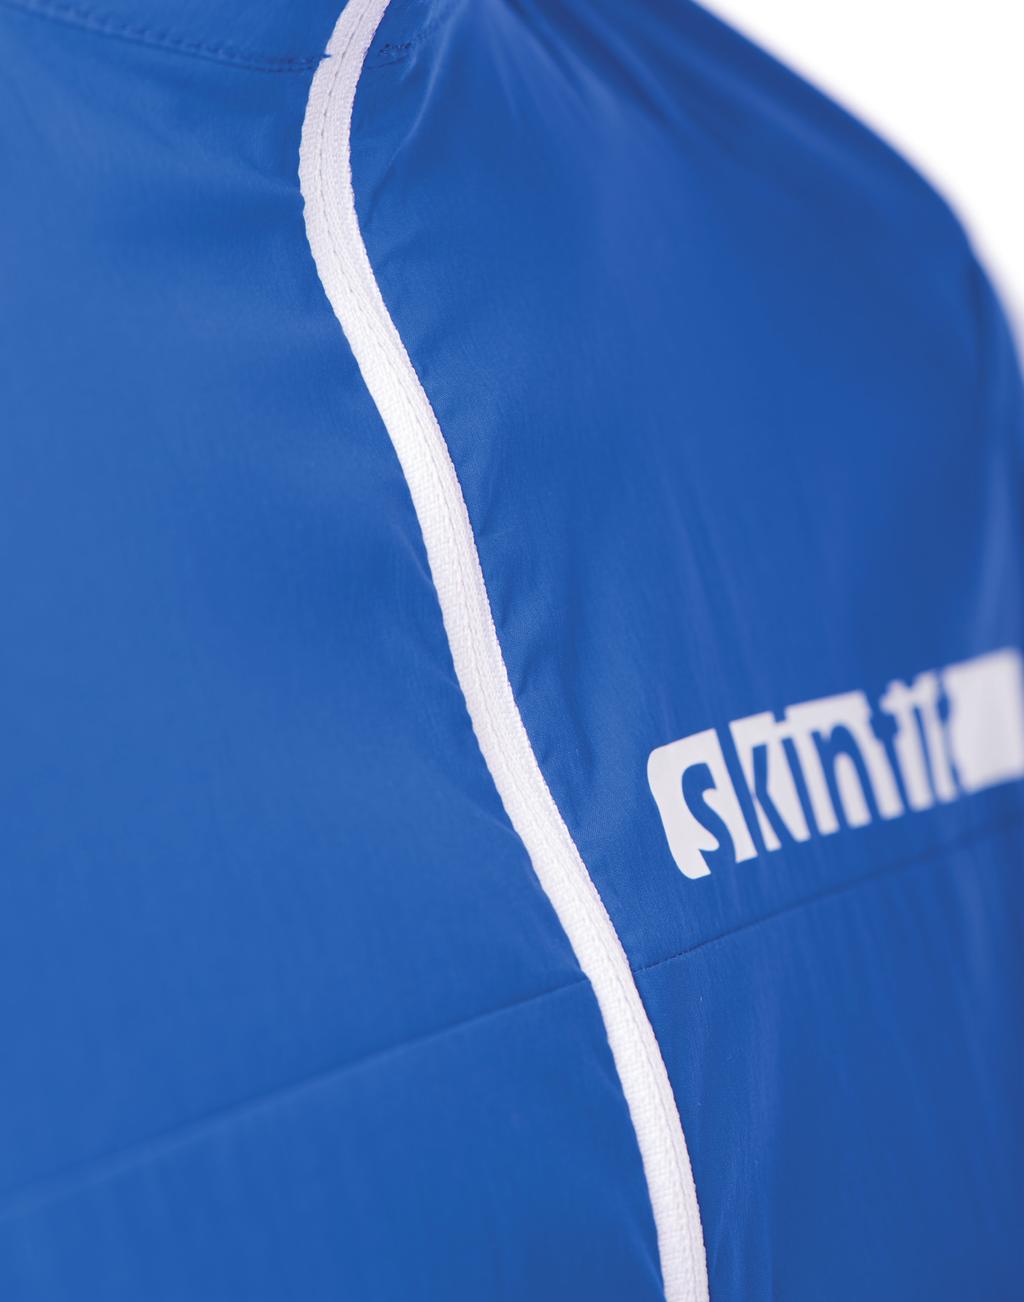 Vento 95 skinfit Vento Protección ultraligera La serie Vento de skinfit ofrece protección contra el viento y las inclemencias del tiempo permitiendo una libertad de movimiento óptima.